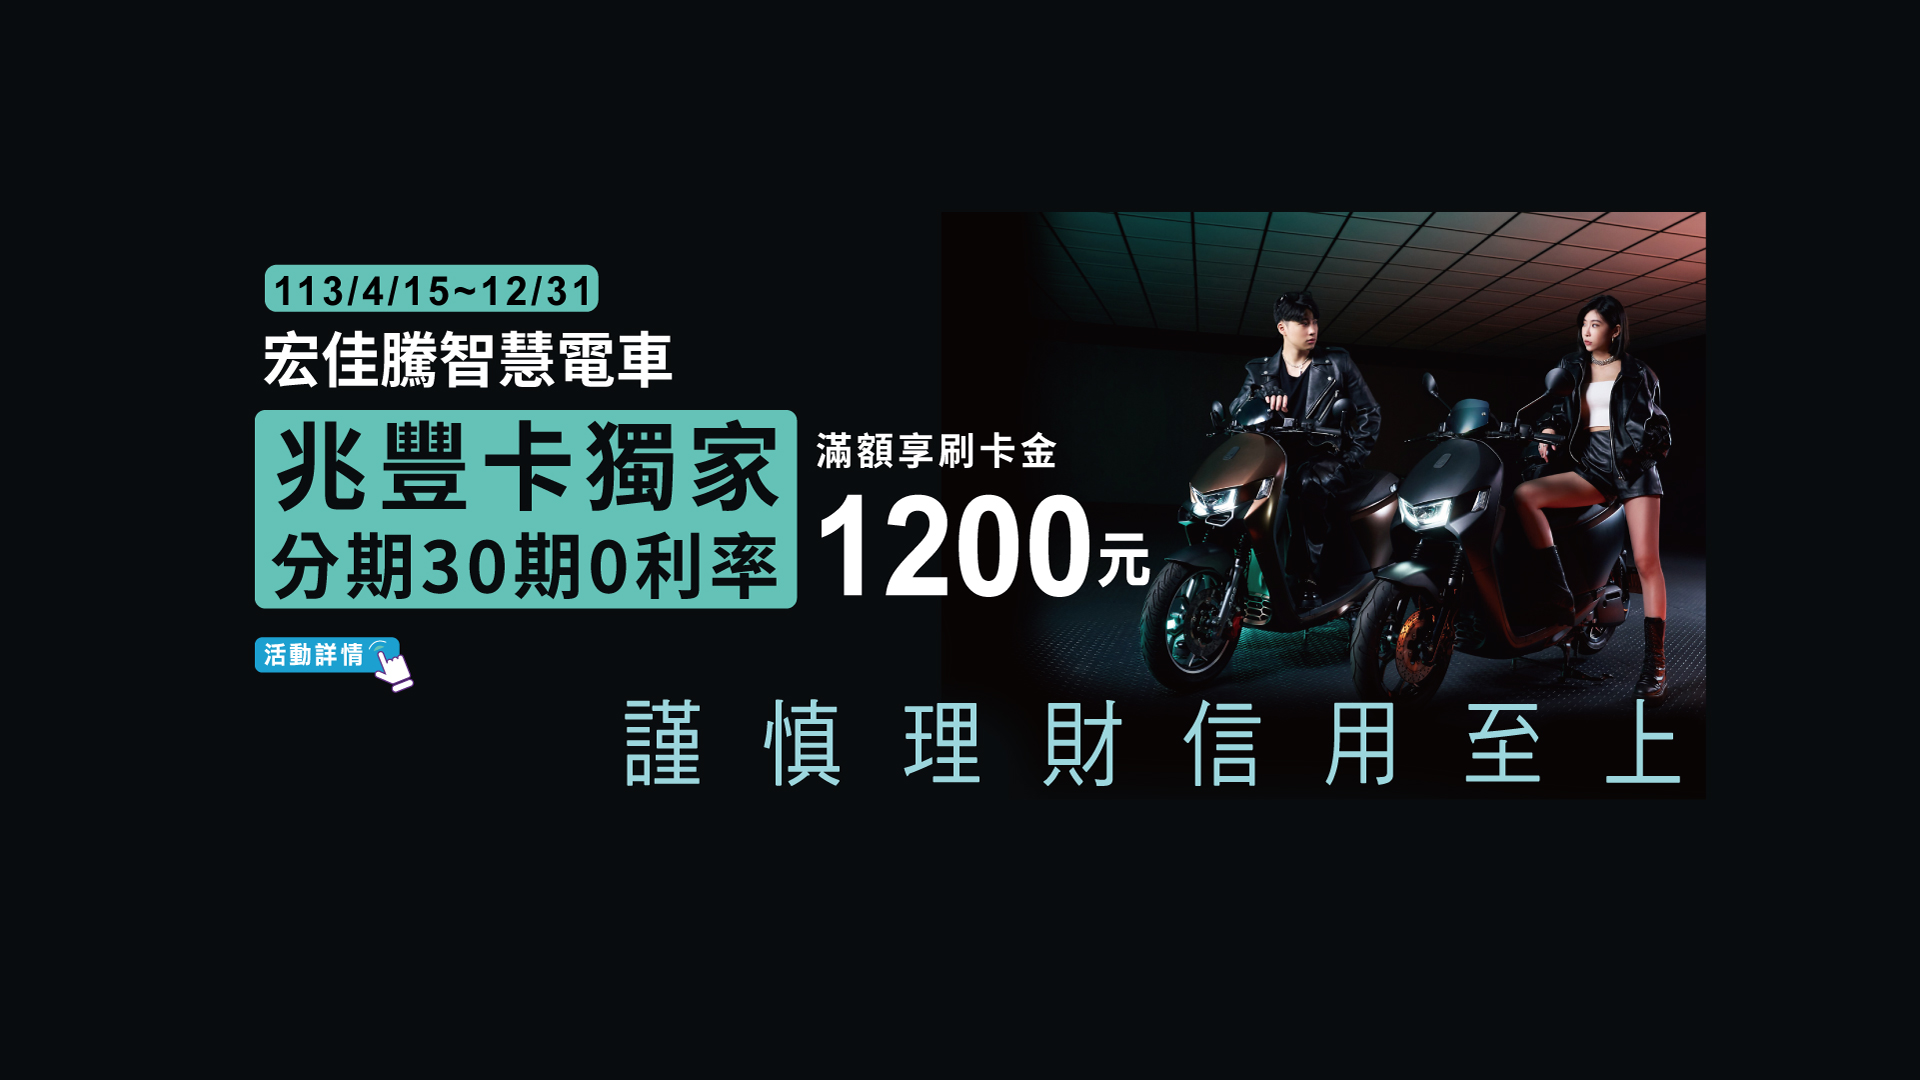 「宏佳騰智慧電車 兆豐卡獨家分期30期0利率 滿額享刷卡金1200元」Banner